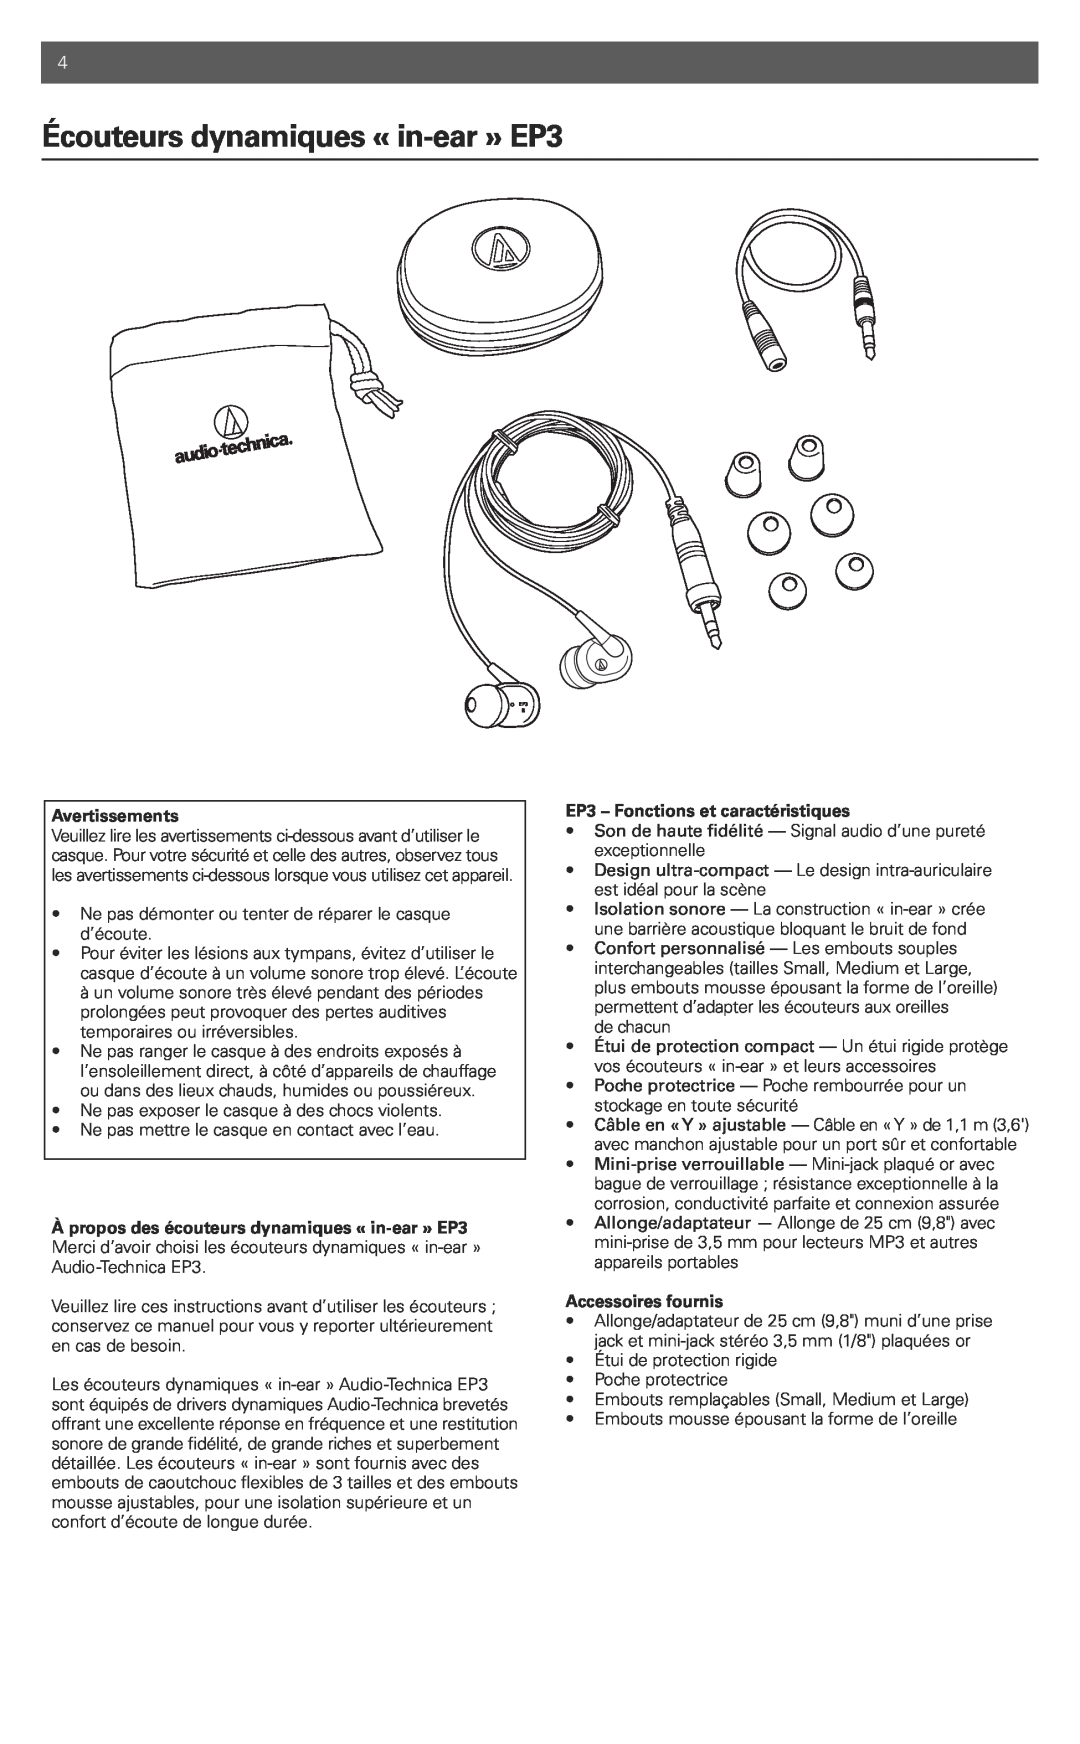 Audio-Technica manual Écouteursdynamiques « in-ear»EP3, Avertissements, EP3 - Fonctions et caractéristiques 